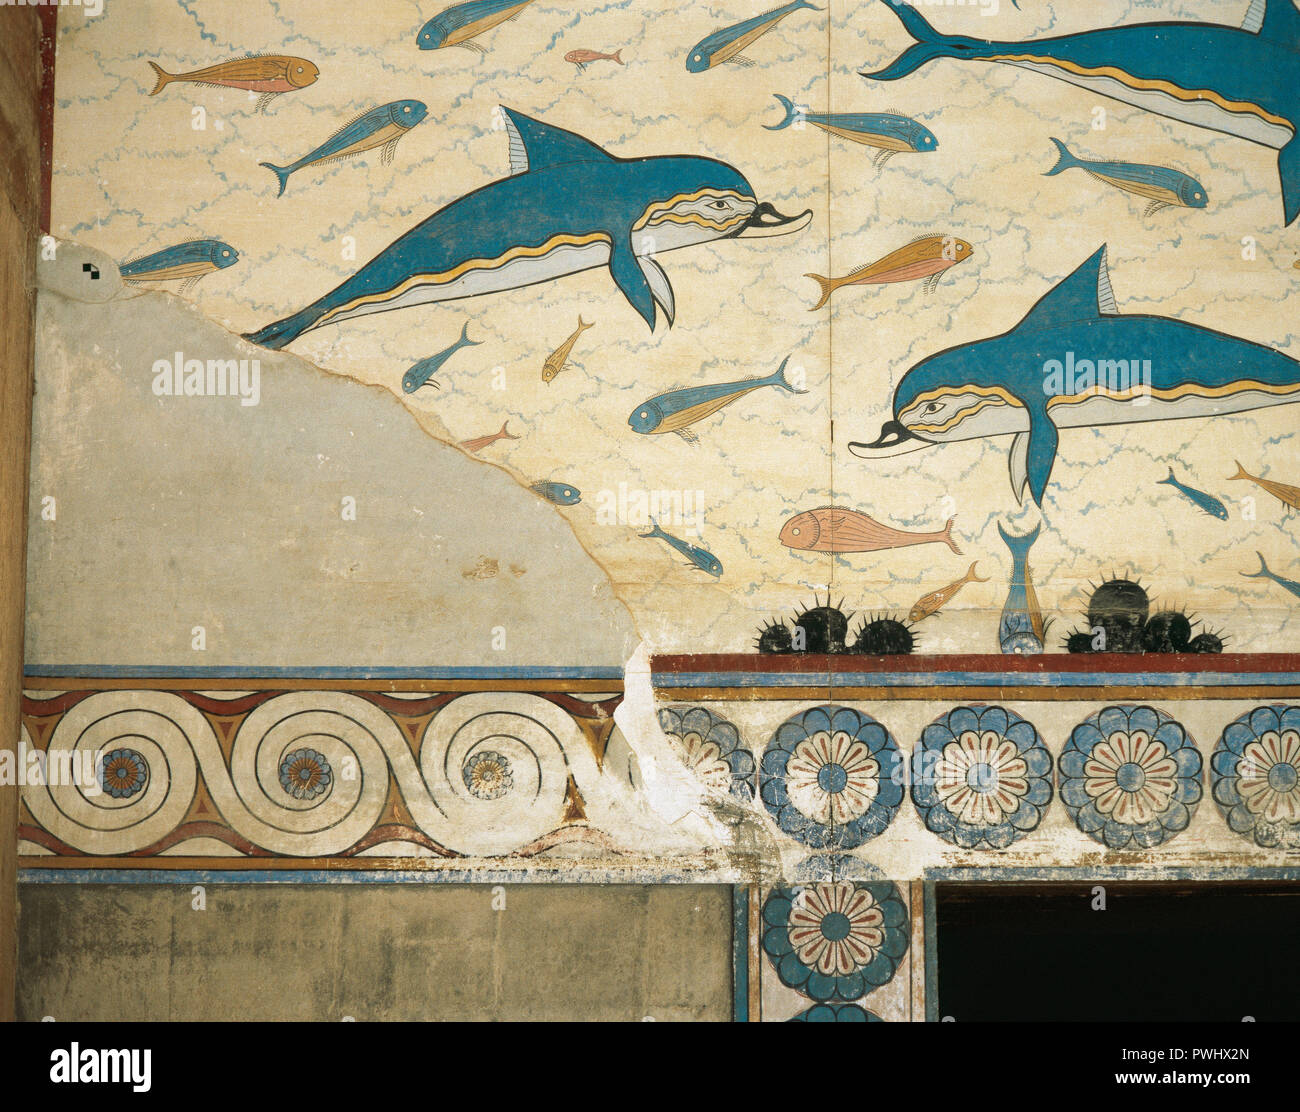 La Grecia. Creta. Palazzo di Cnosso (1700-1450 a.C.). Megaron della regina. Affresco di delfini, dettaglio. Periodo Postpalatial. Foto Stock